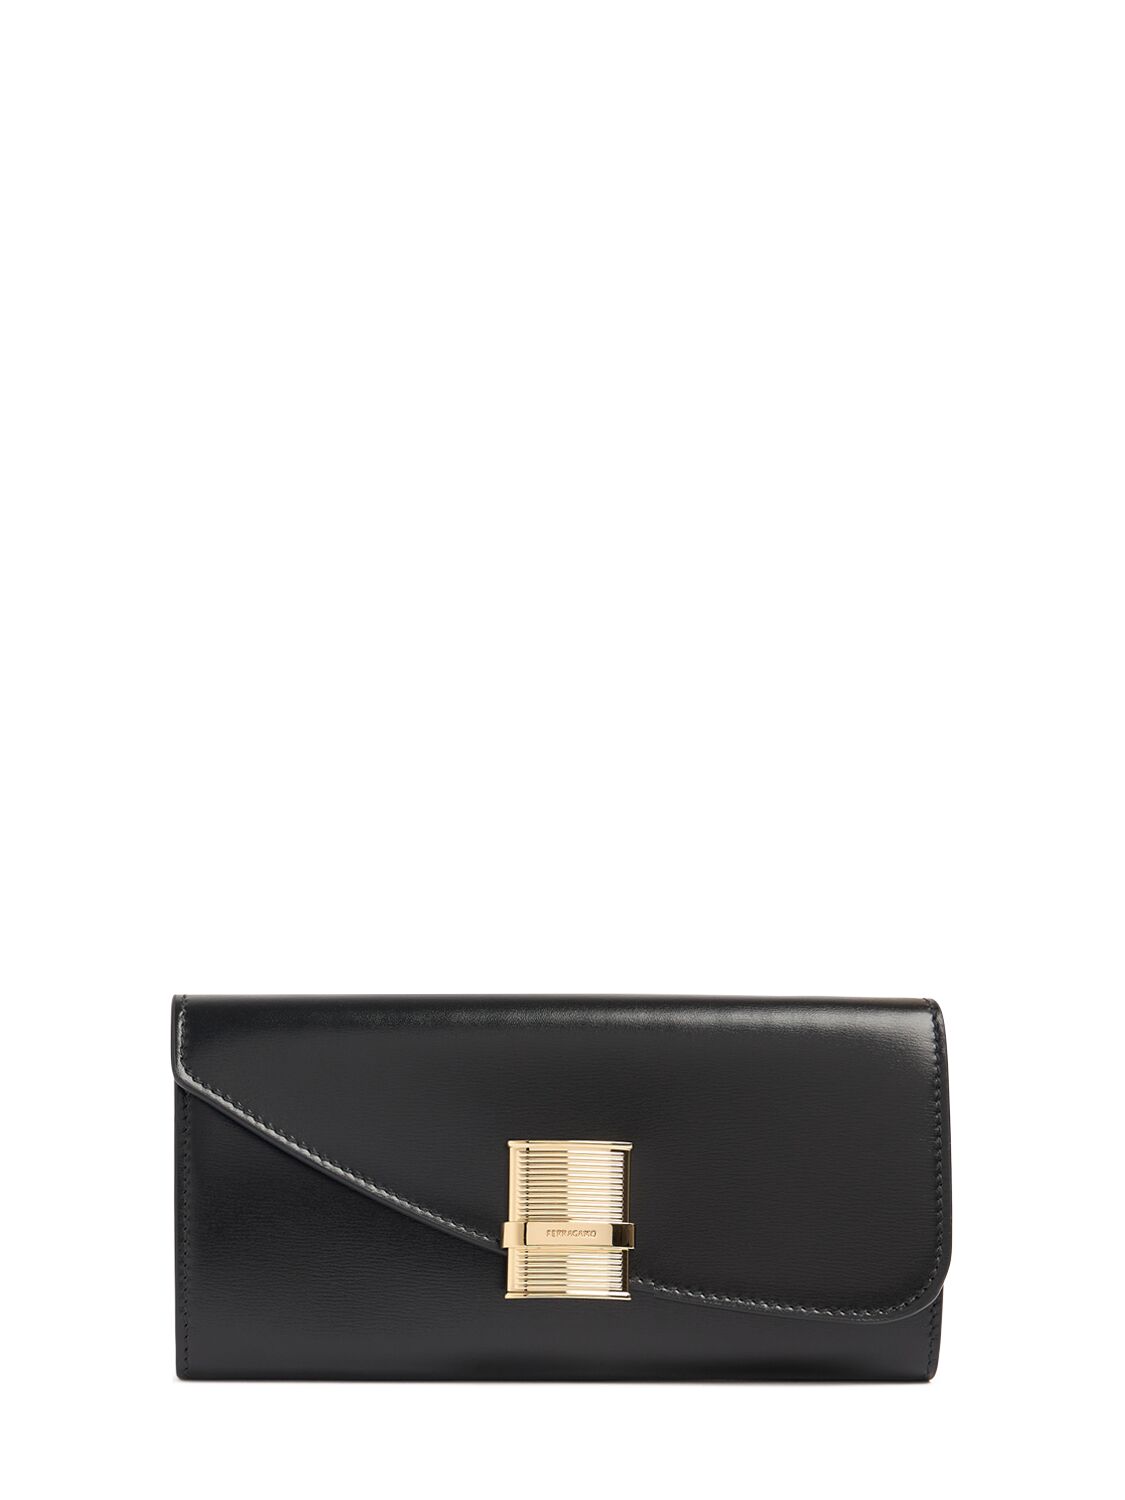 Ferragamo Leather Wallet W/ Chain In Black